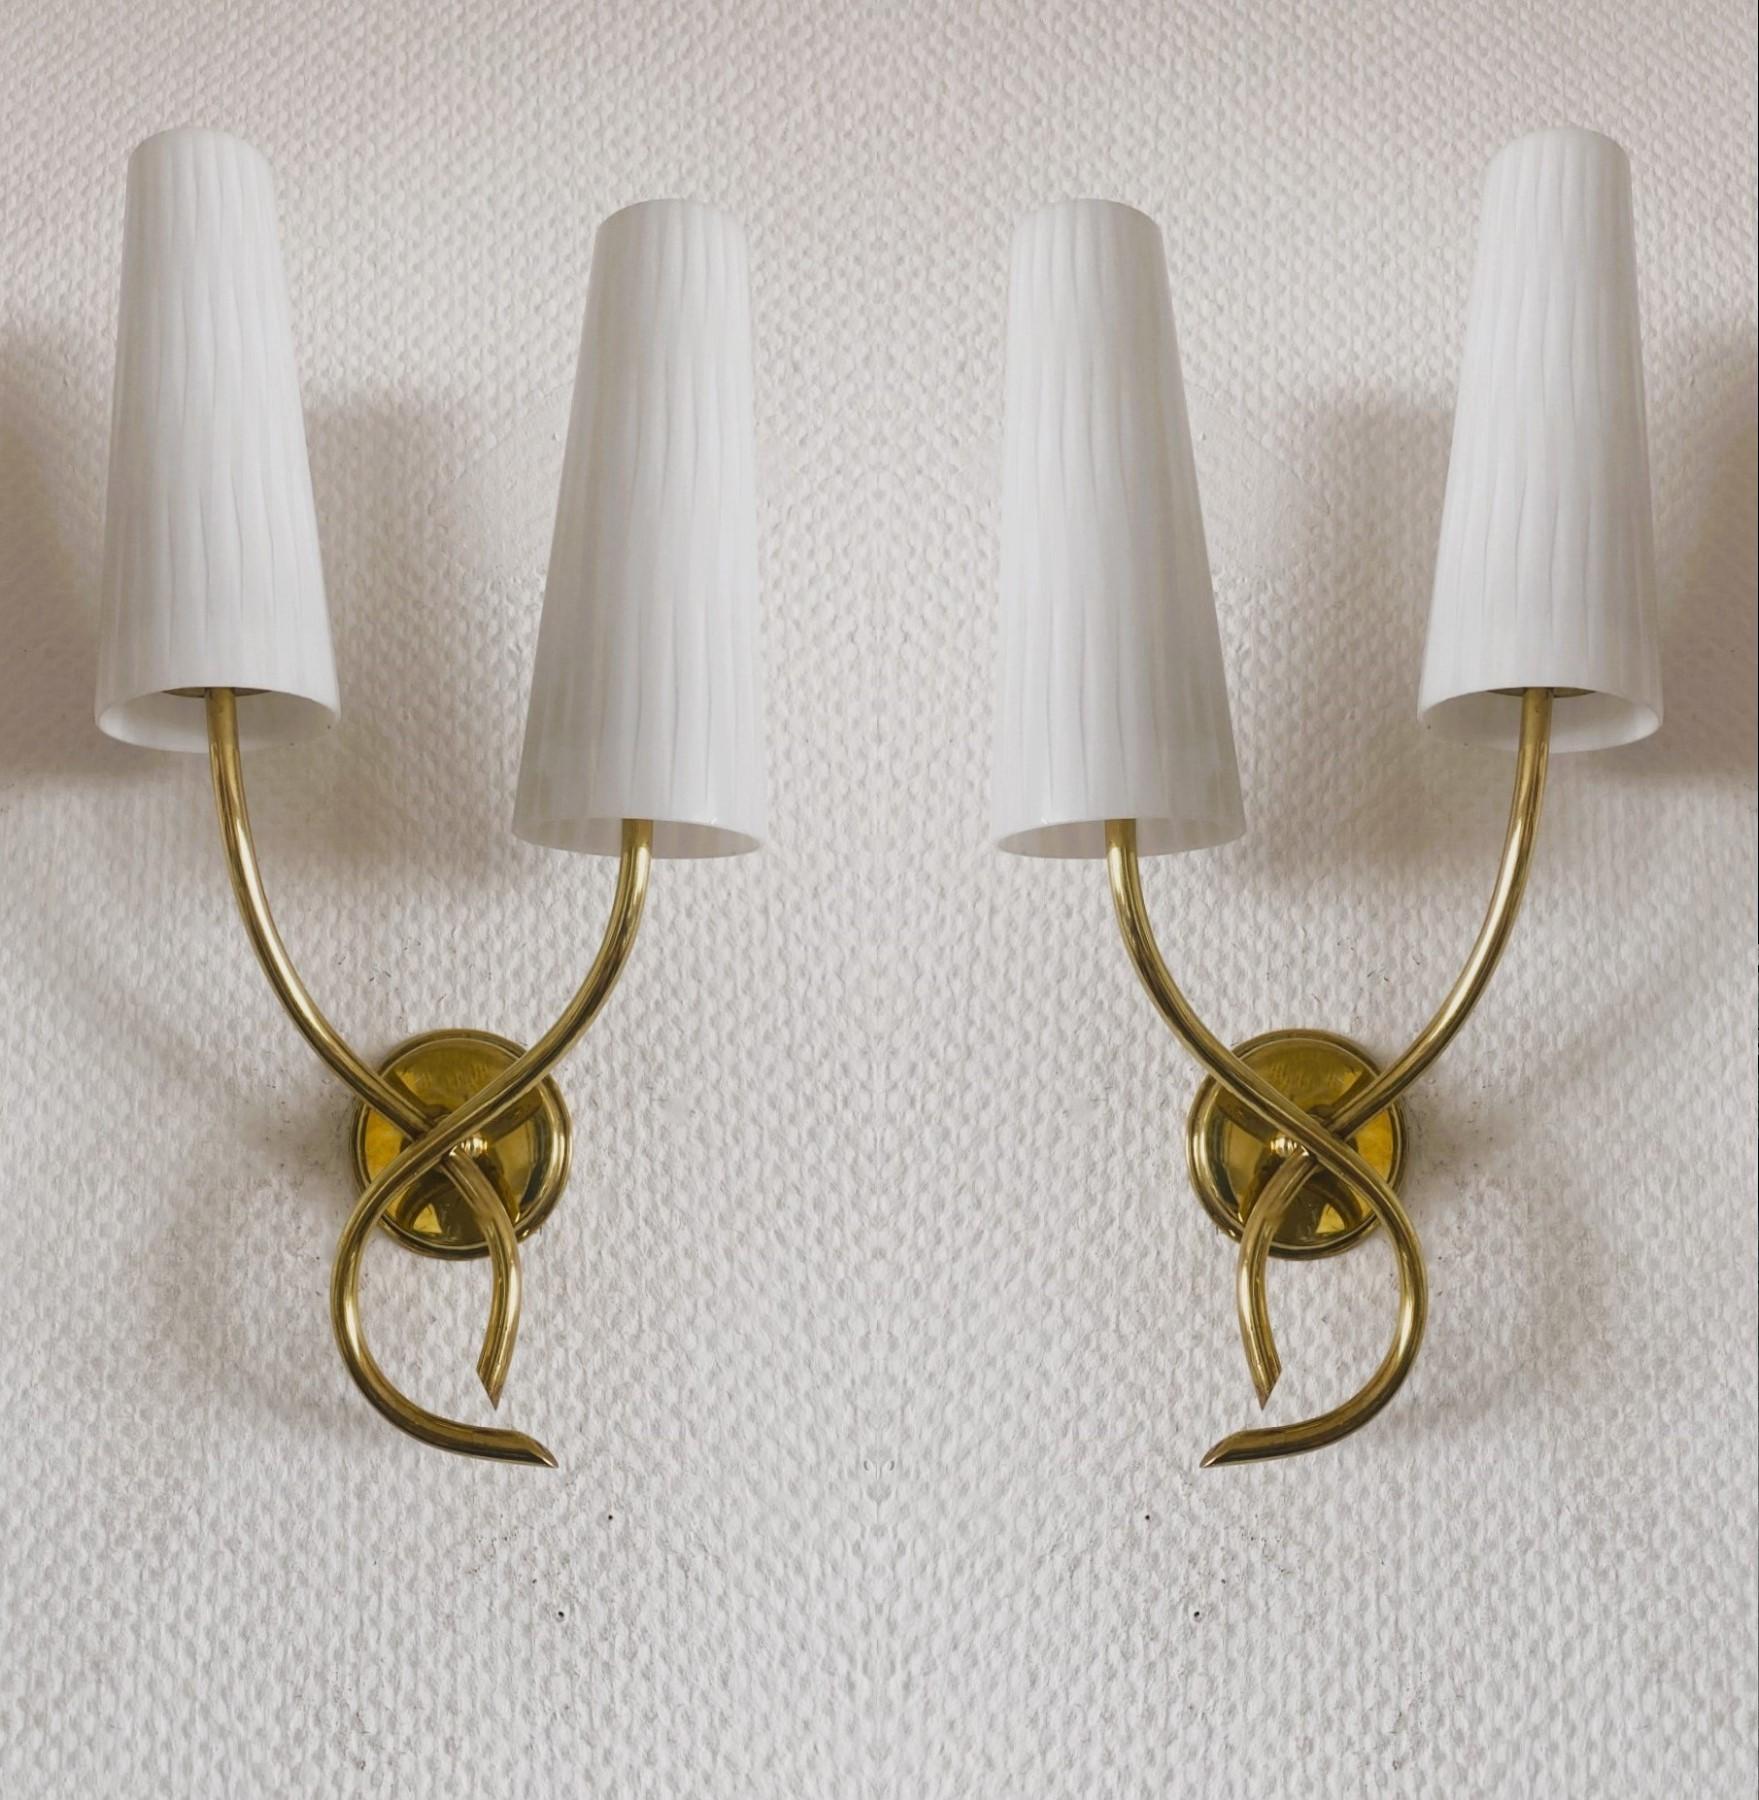 Jolie paire d'appliques de la Maison Lunel, France, années 1950. Elegant design en laiton doré avec deux bras de lampe à volutes croisées.  avec abat-jour en verre opalin. Les deux pièces sont en très bon état, avec une belle patine d'usage.  au